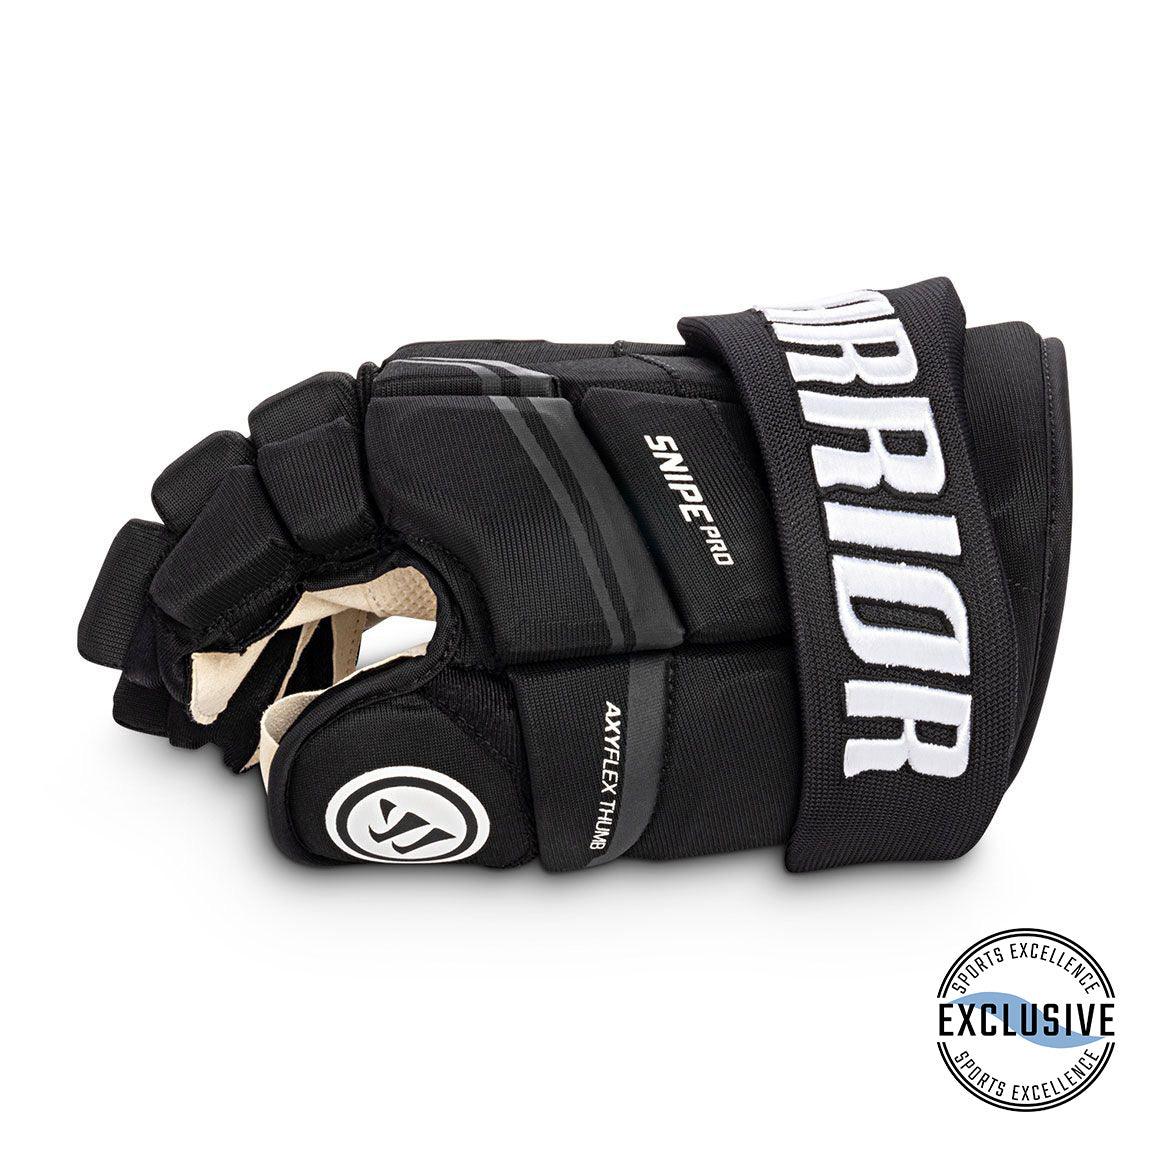 Junior Snipe Pro Hockey Gloves